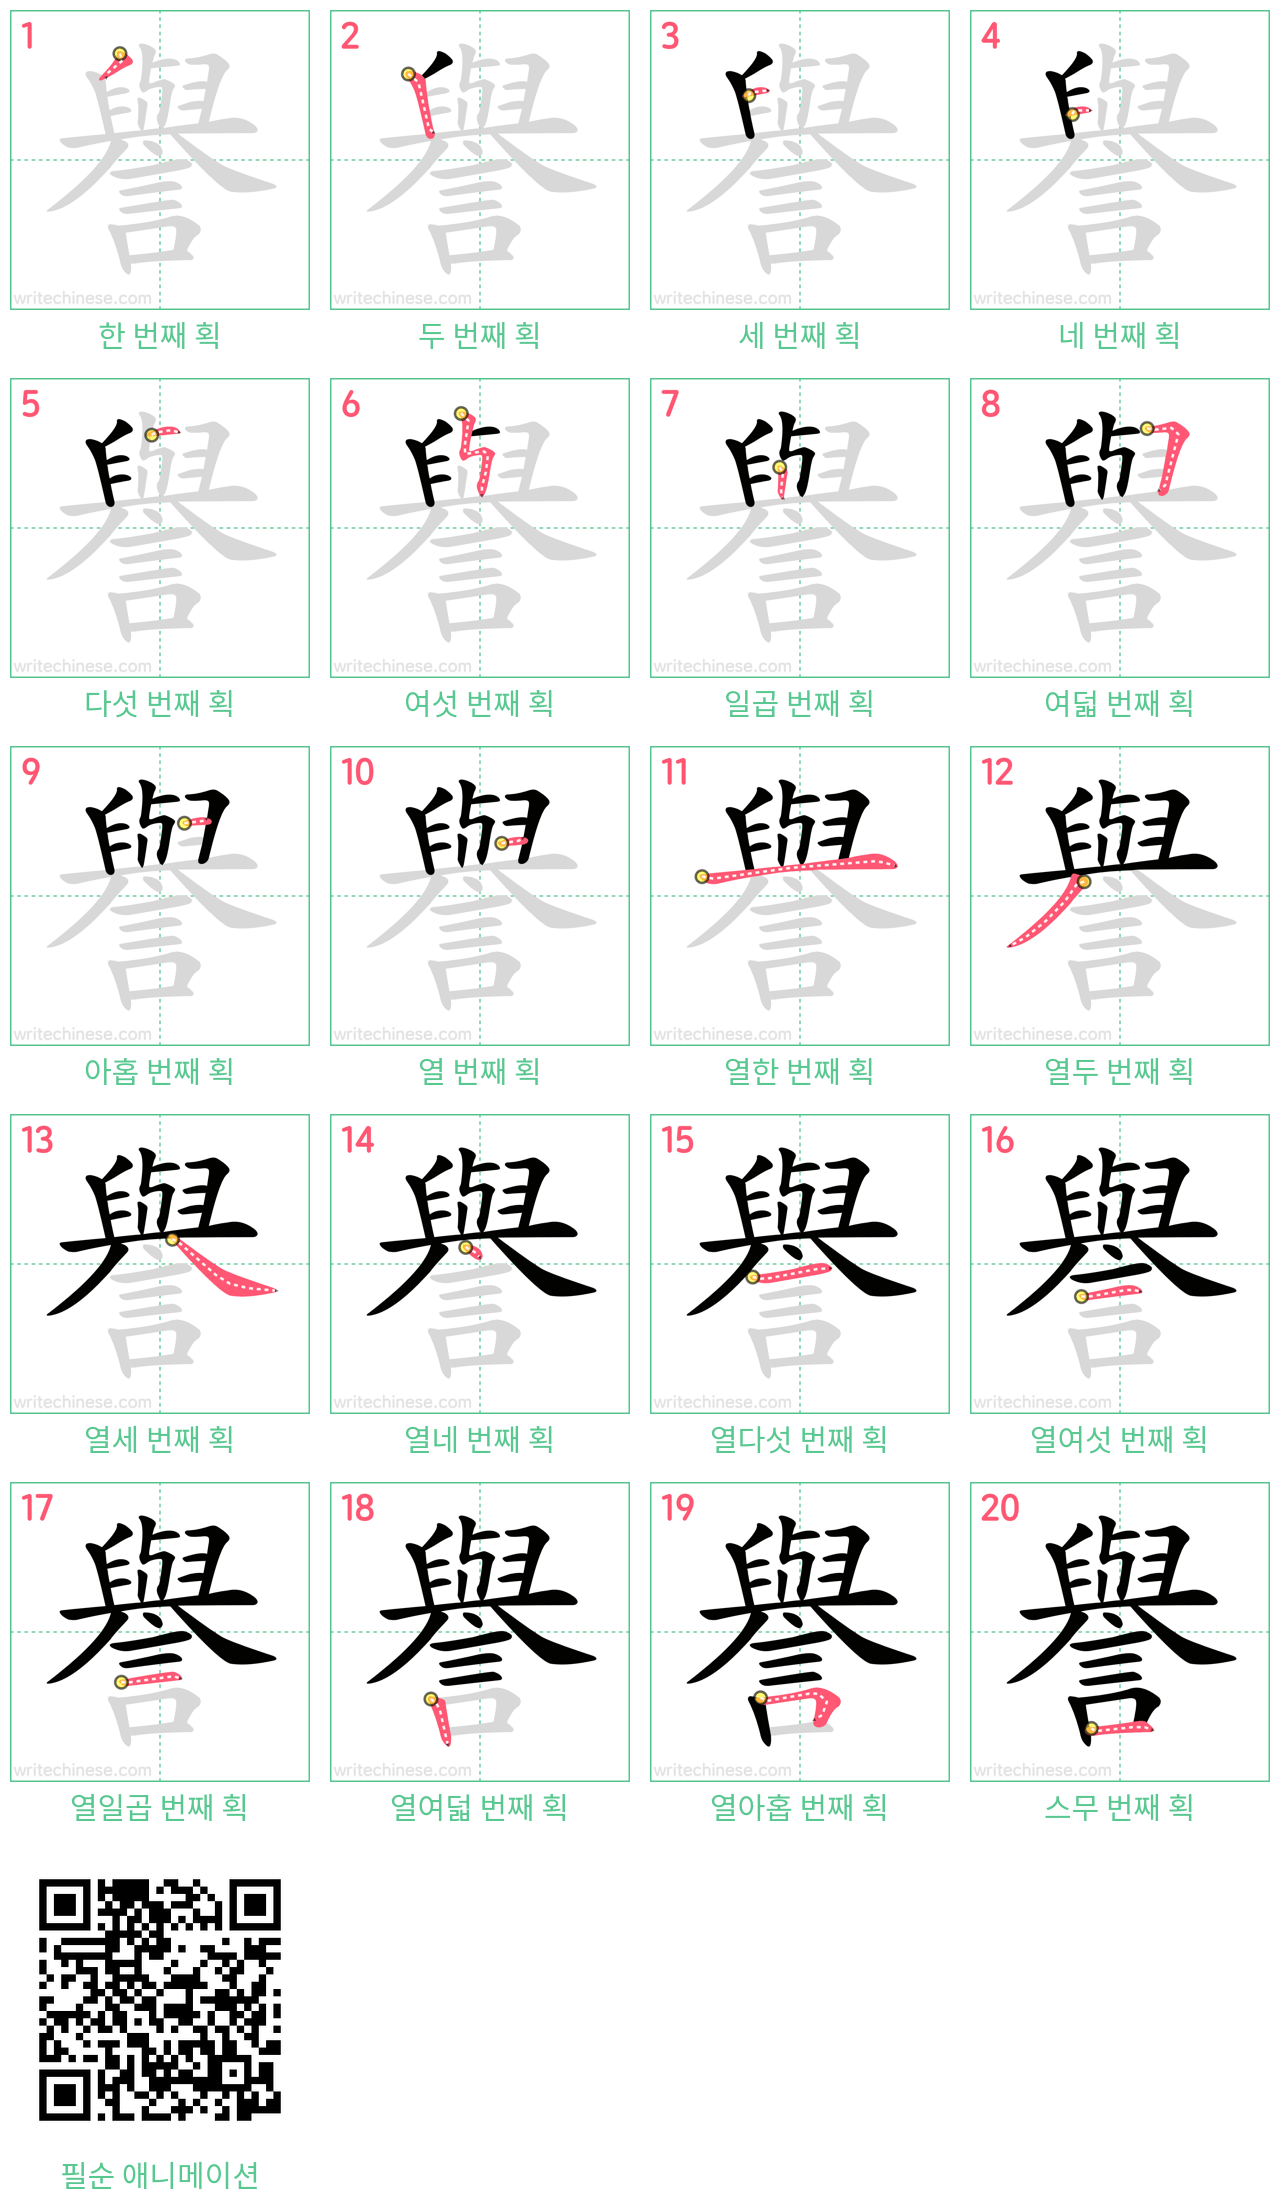 譽 step-by-step stroke order diagrams